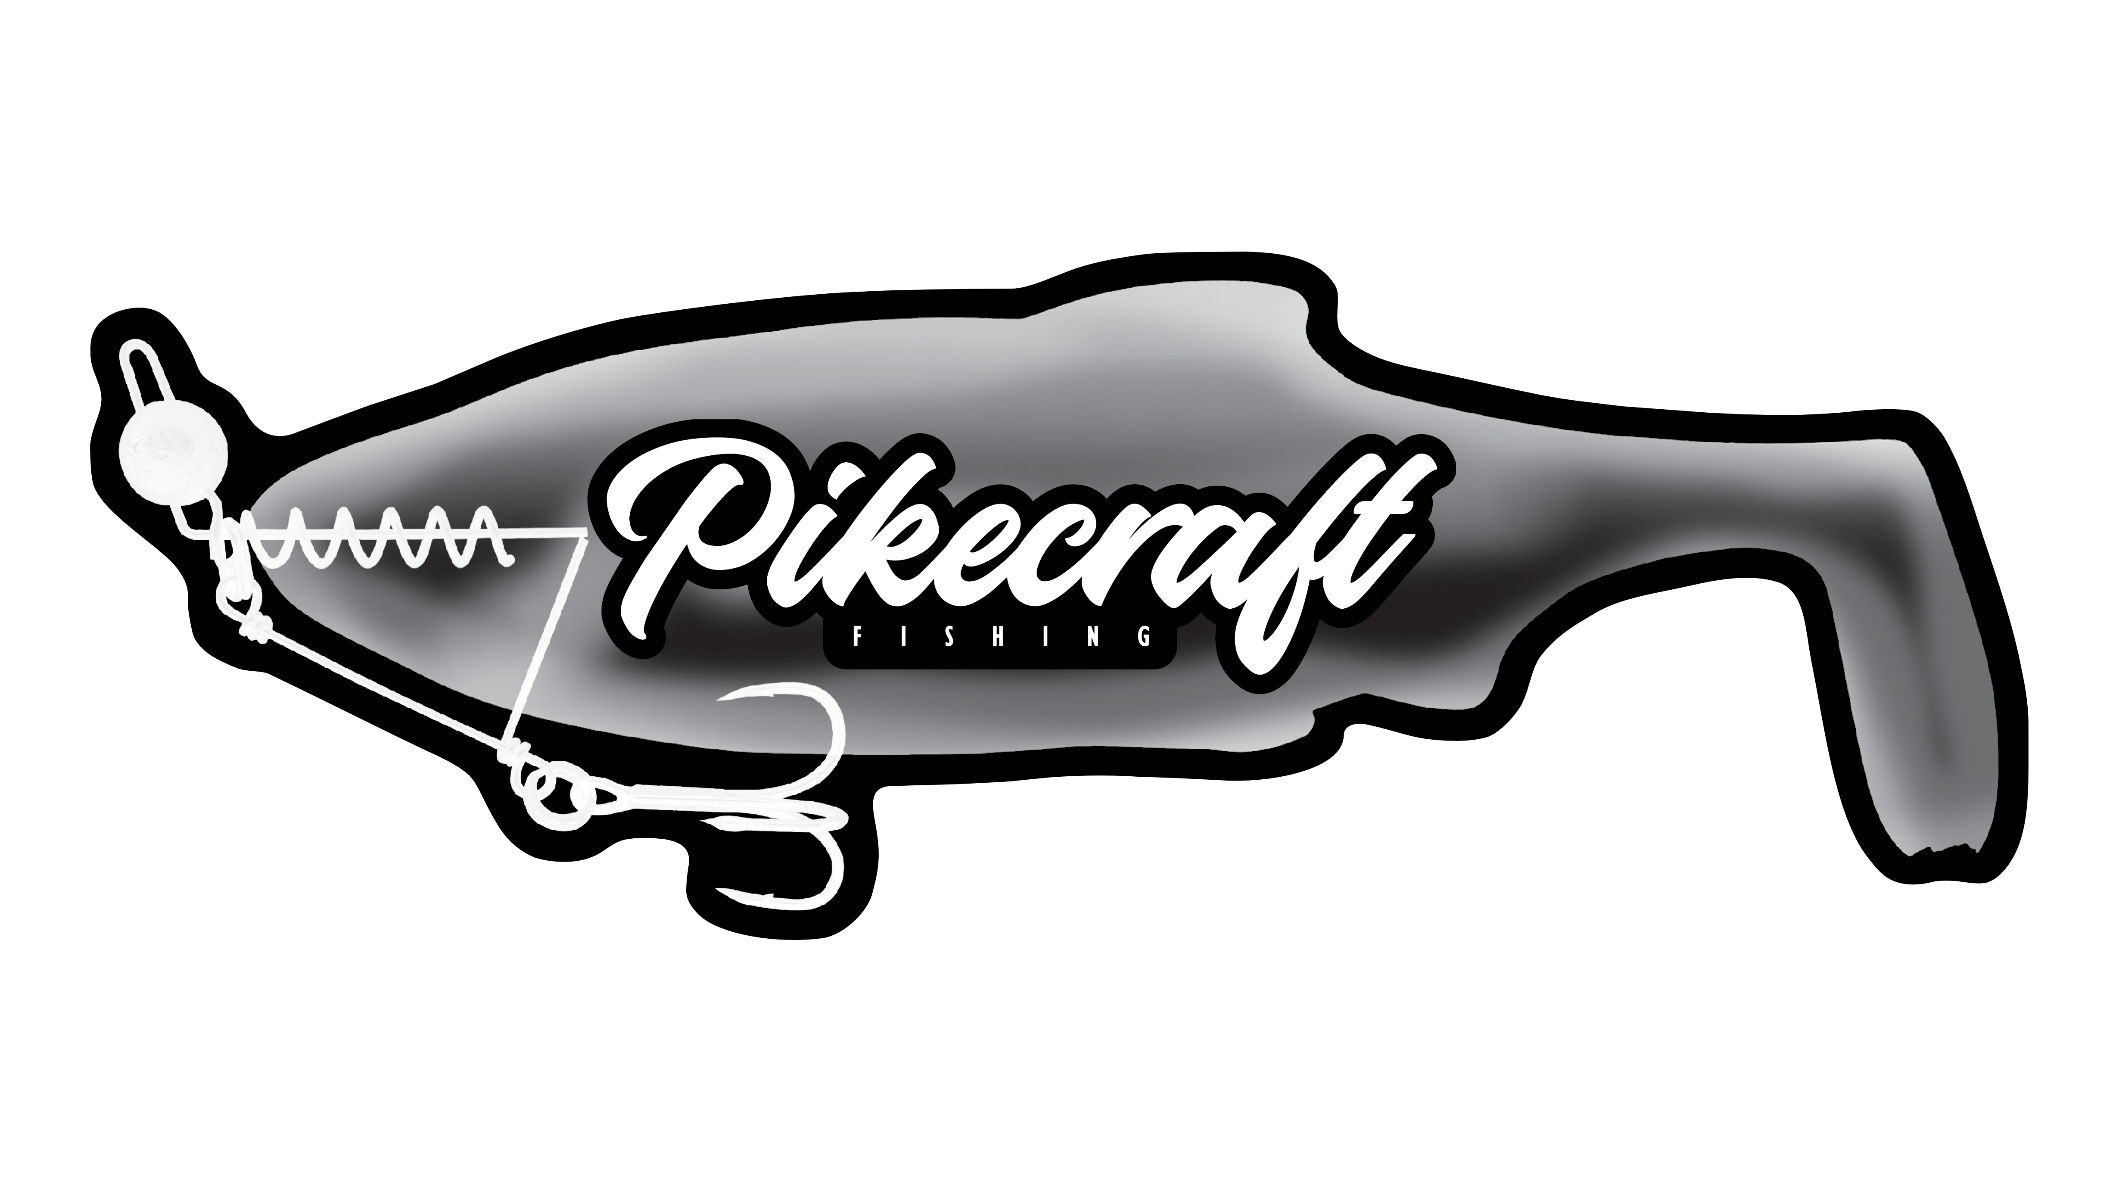 Bilder Pikecraft Fishing